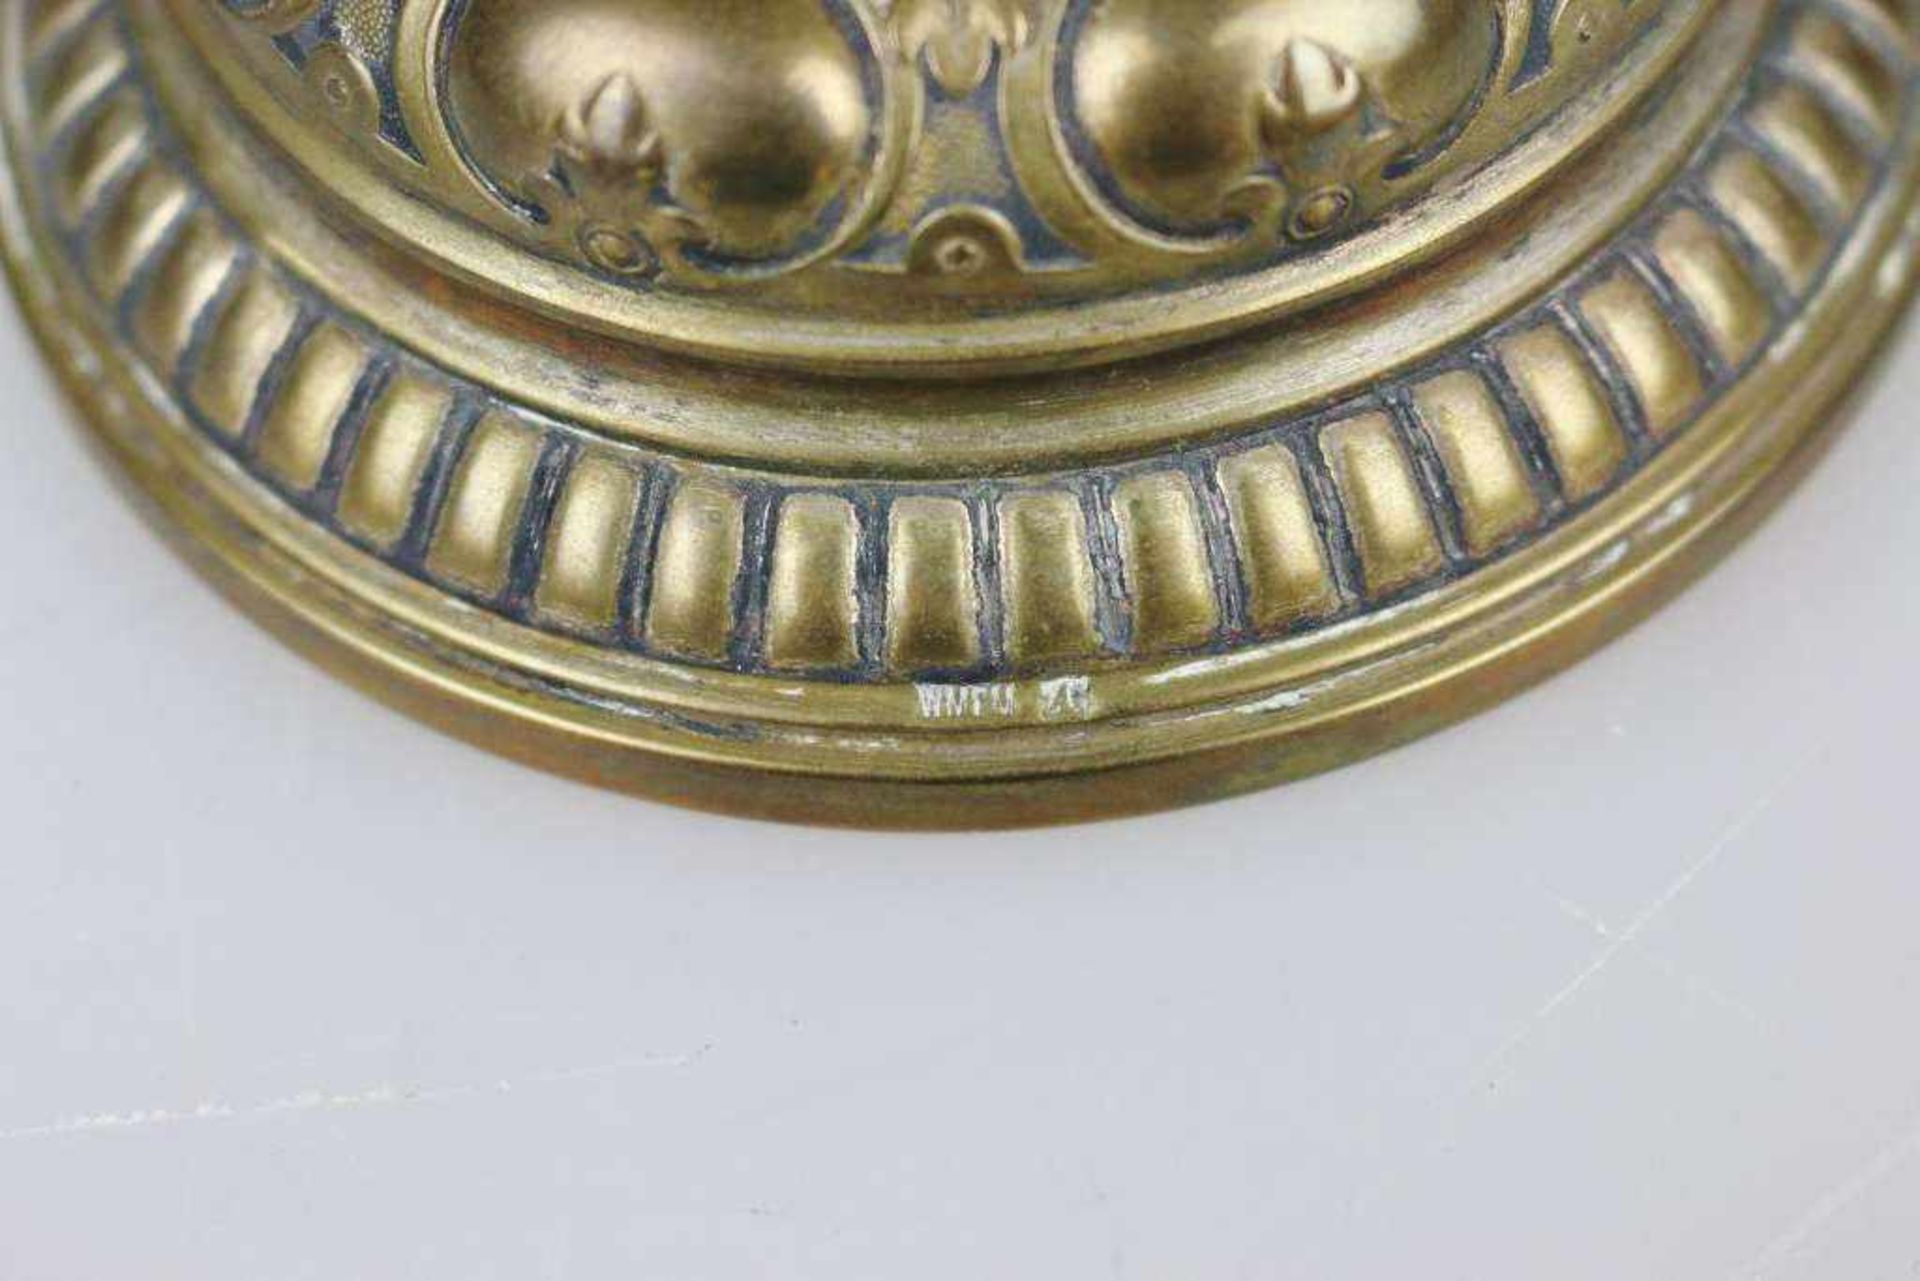 Deckelpokal, Messing, versilbert, innen vergoldet, Historismus, dat. 1901. Kelchförmiger Korpus - Bild 4 aus 4